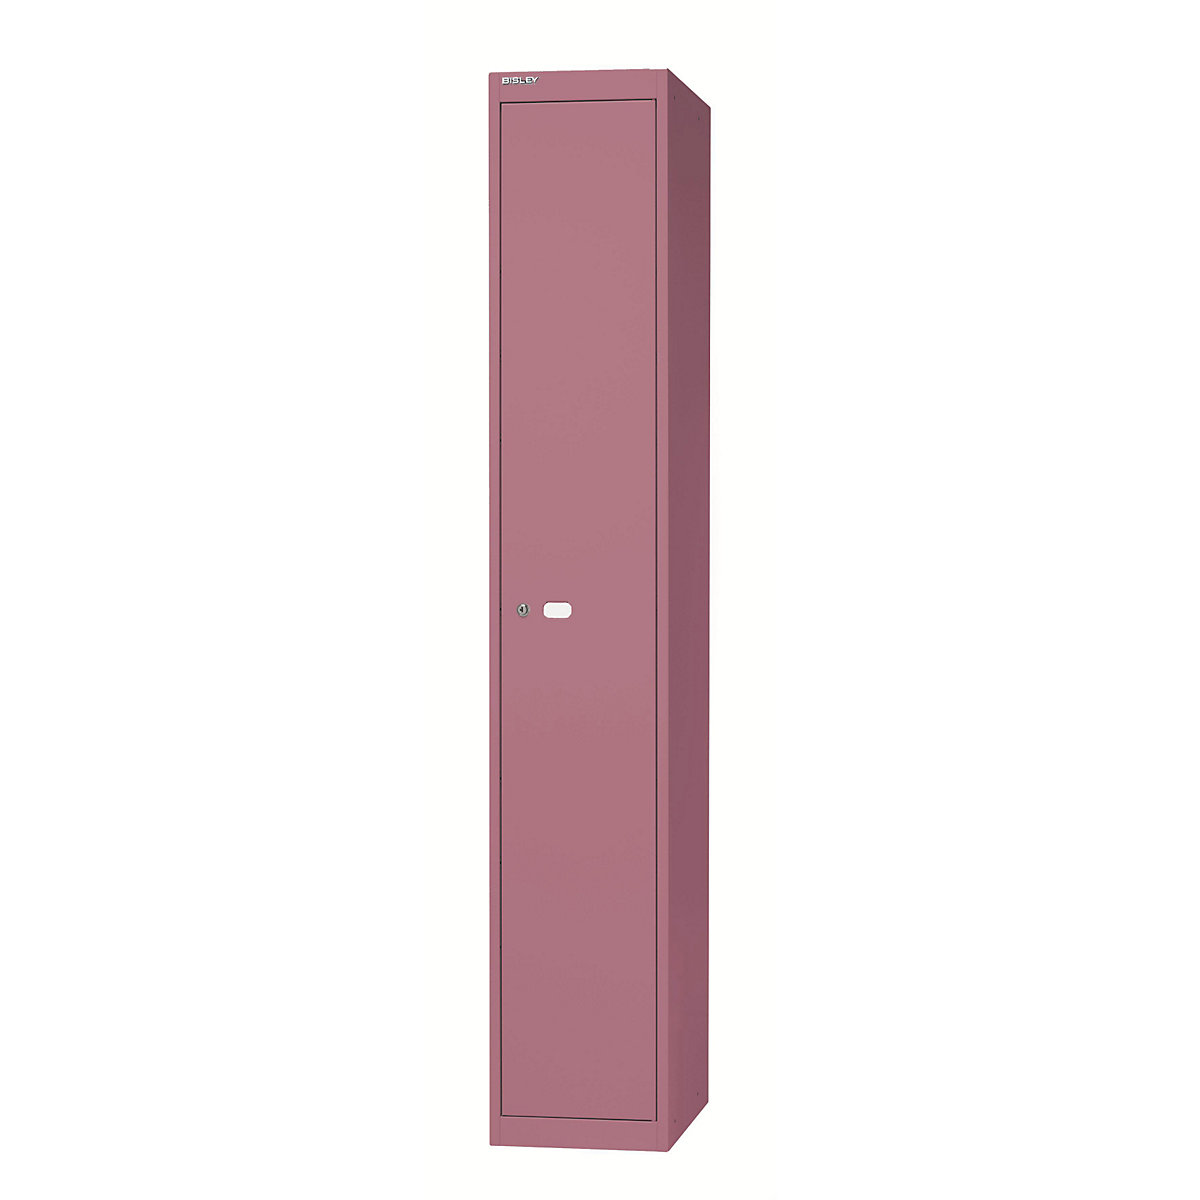 BISLEY OFFICE Garderobensystem, 1 Abteil, Tiefe 457 mm, mit 1 Hutfachboden, 1 Kleiderstange, pink